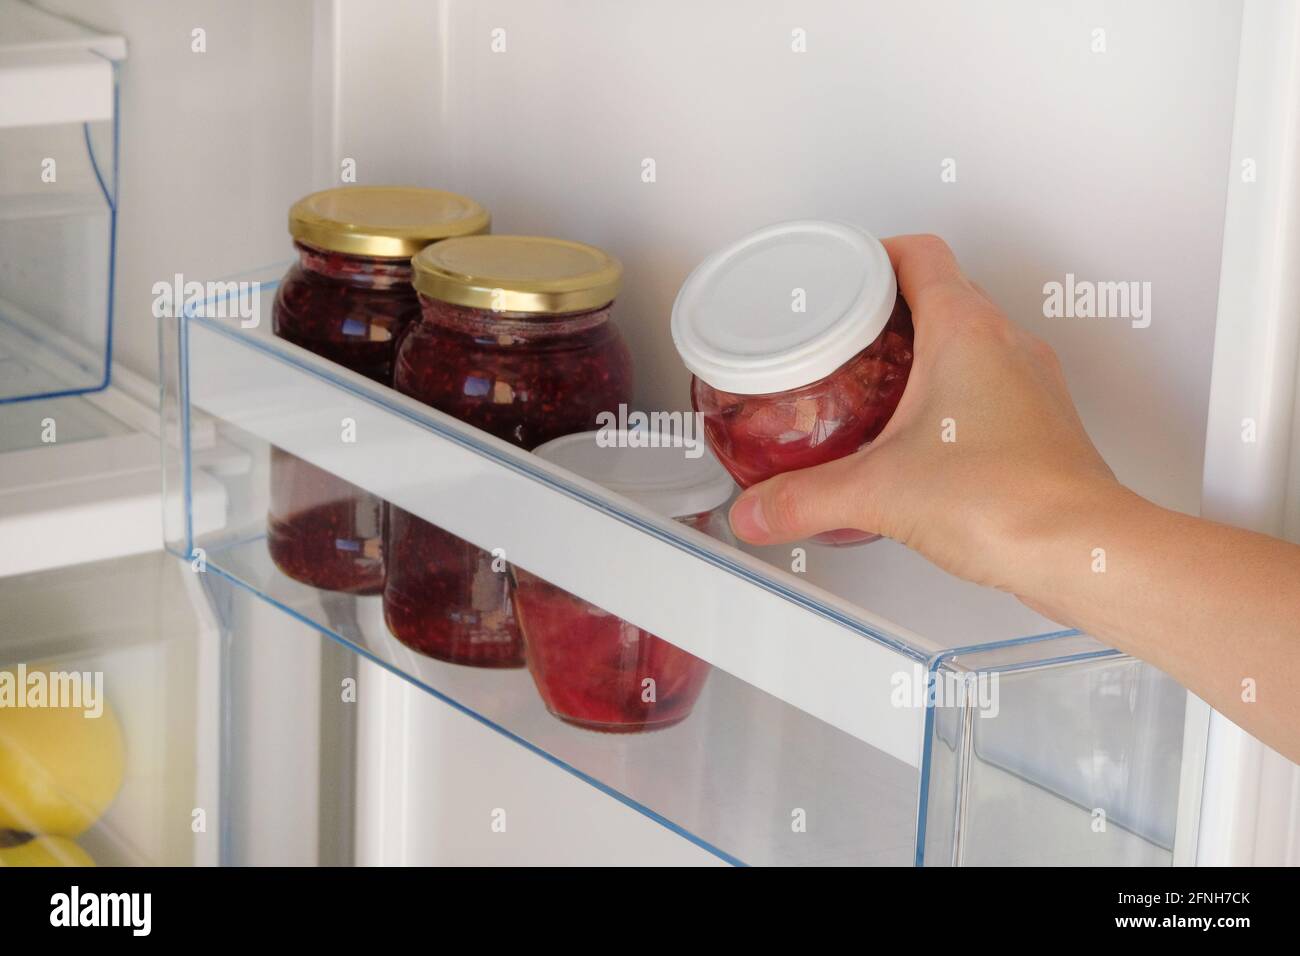 Glasgläser mit Himbeer- und Apfelmarmelade auf dem Regal im Kühlschrank.  Weibliche Hand mit einem Glas roter hausgemachter Marmelade. Fermentierte  gesunde Lebensmittel stehen im Kühlschrank Stockfotografie - Alamy